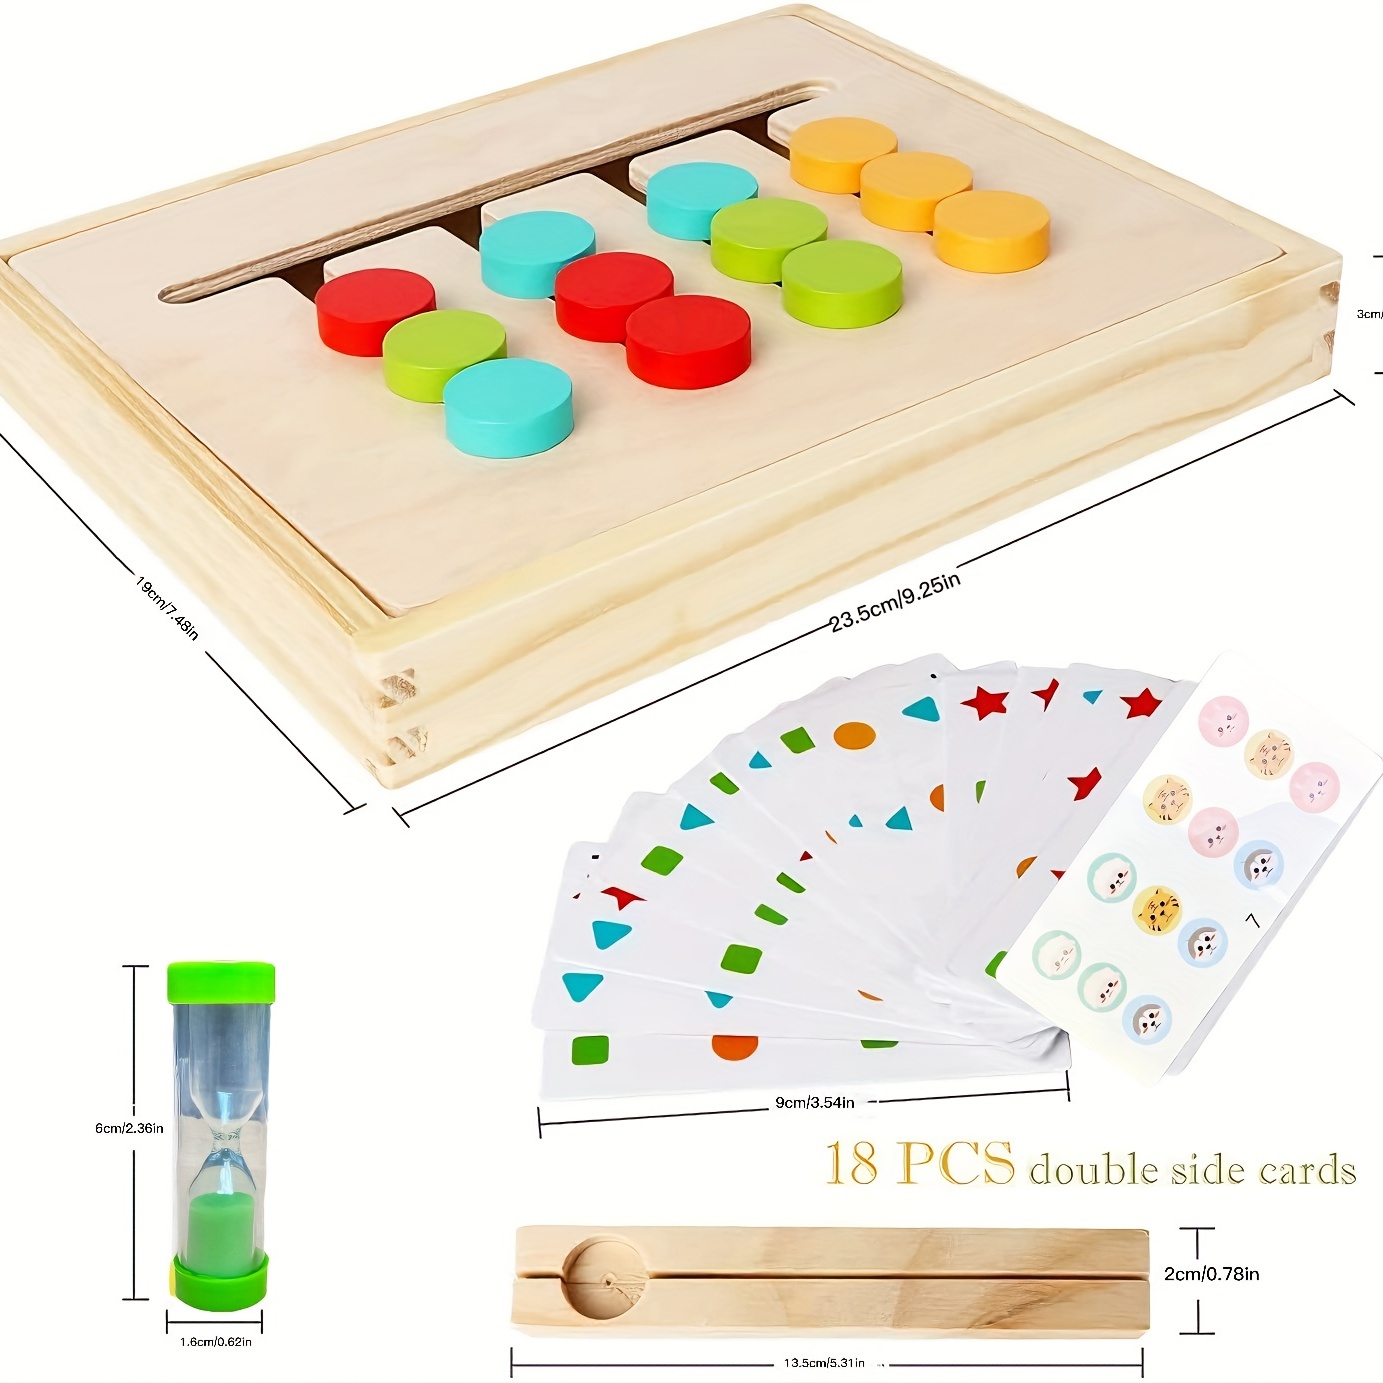 Montessori lernspielzeug Schiebepuzzle Farb Tier matching - Temu